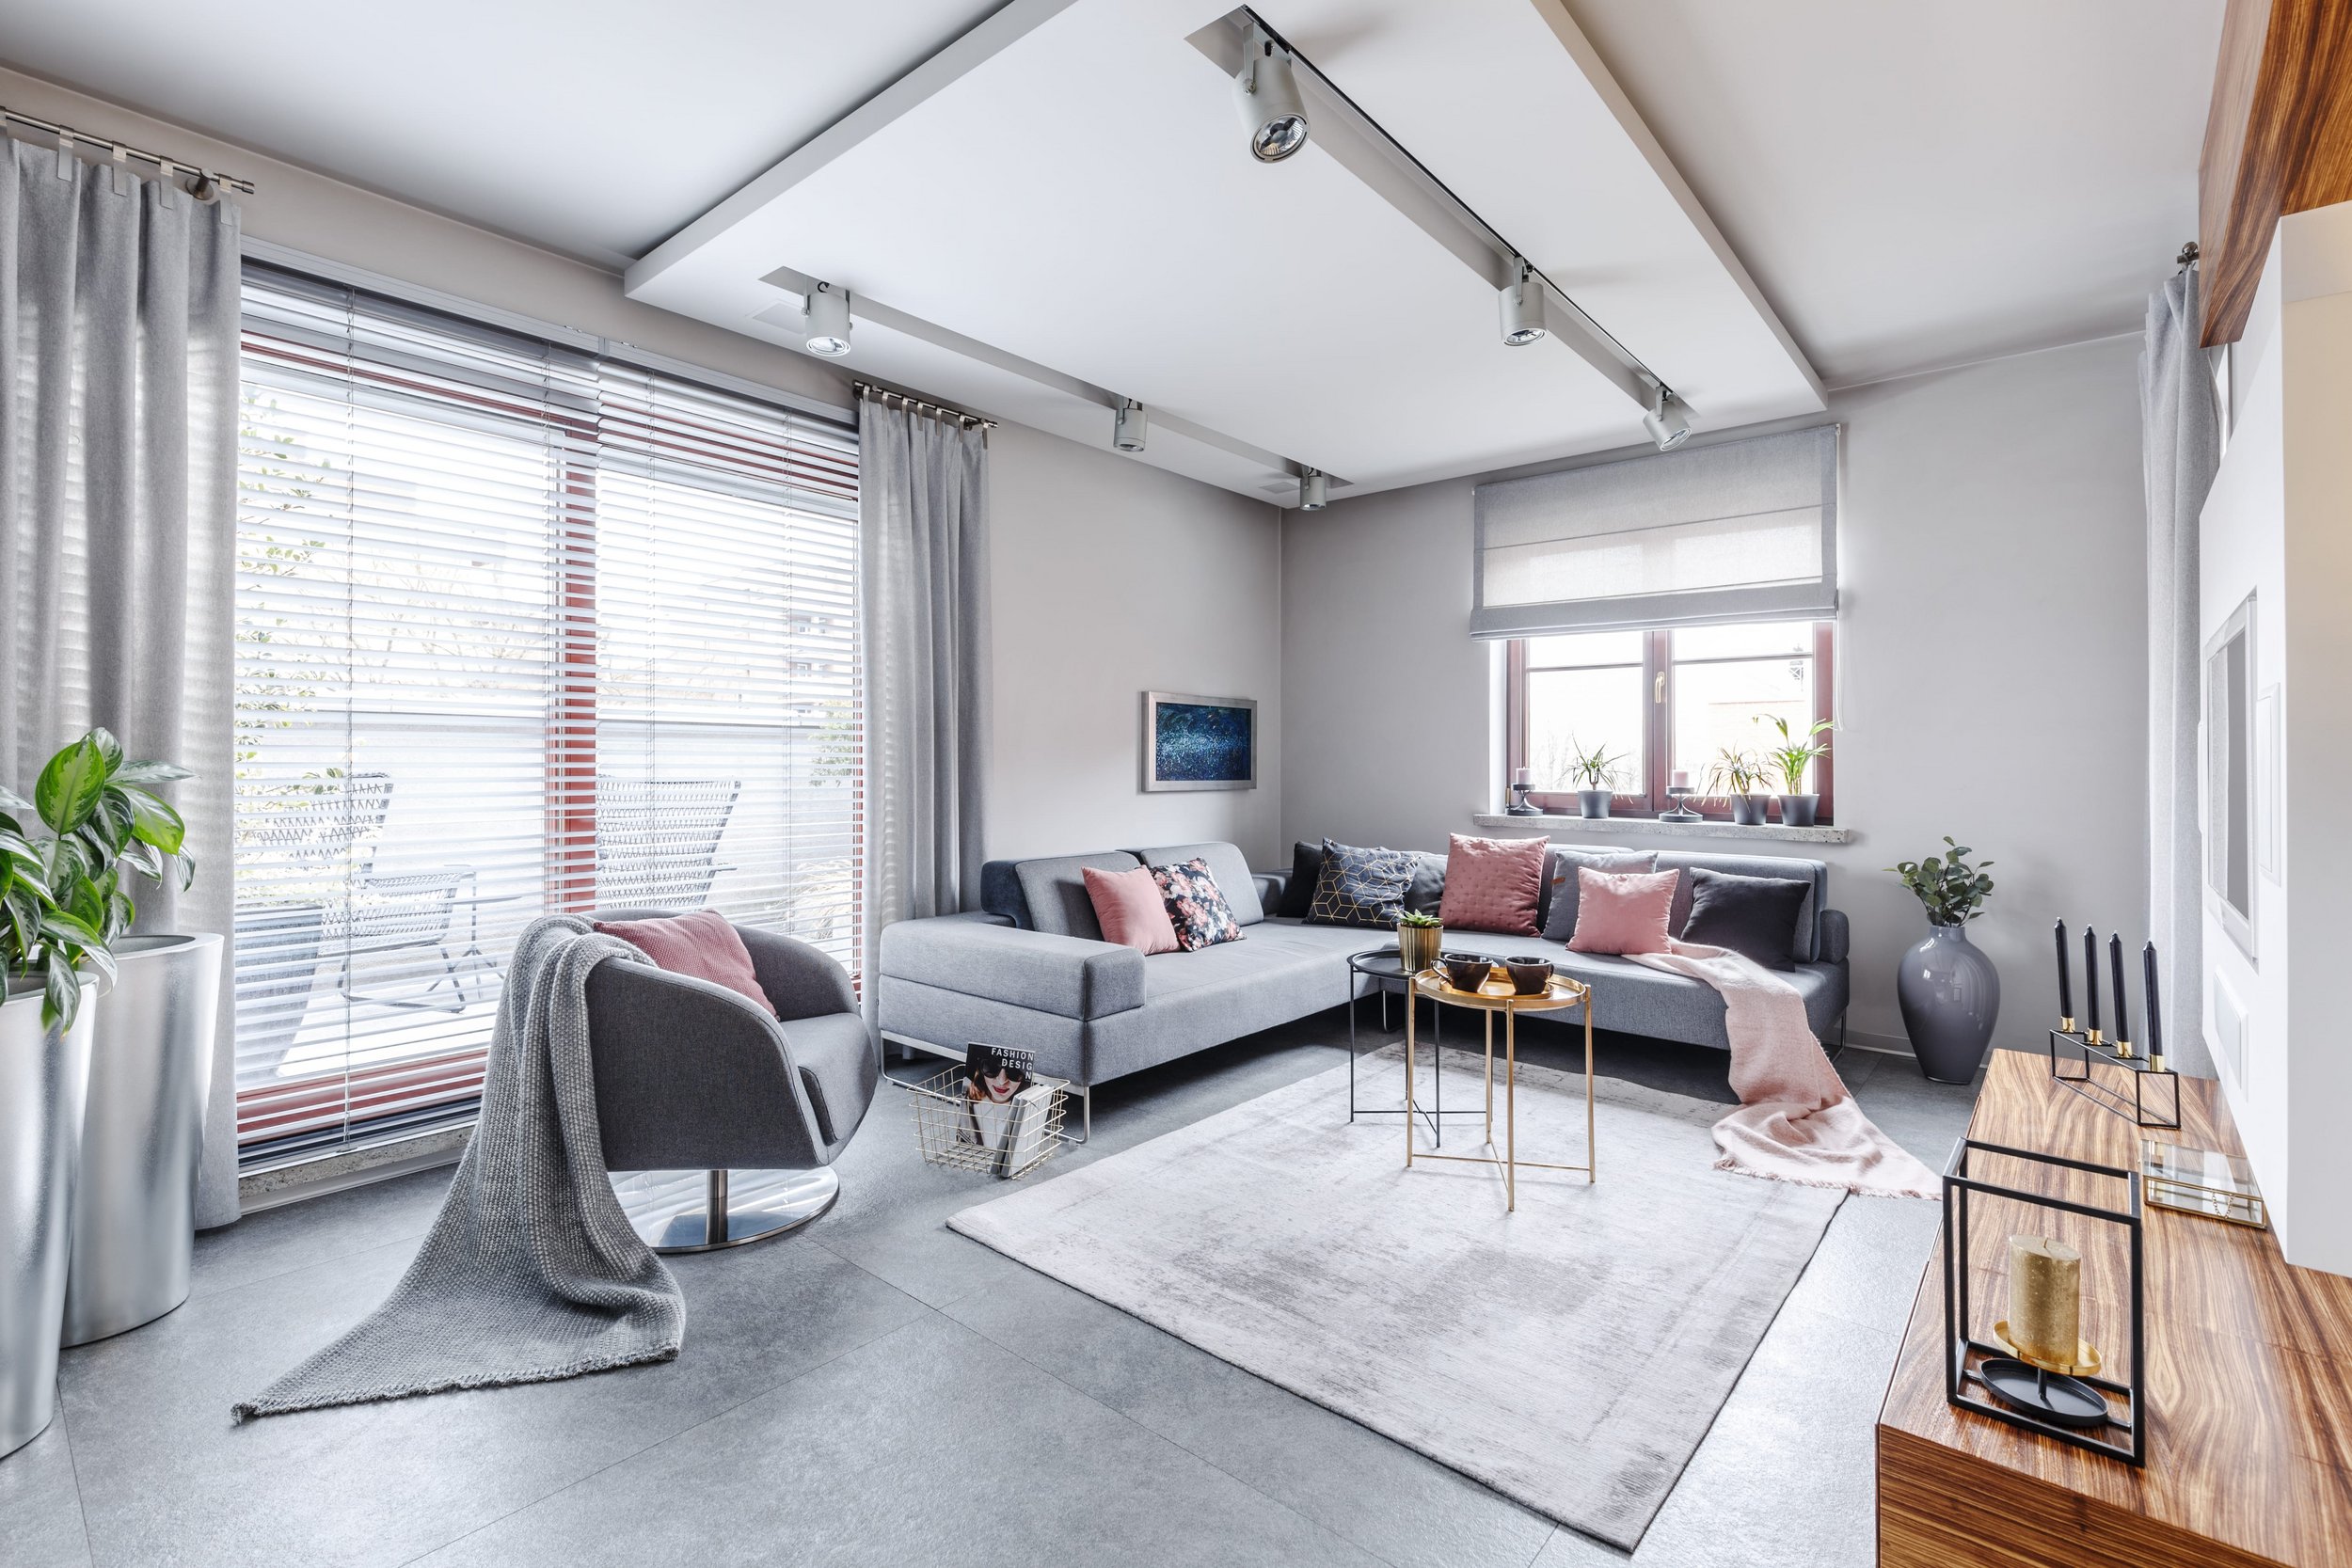 Living room in modern design